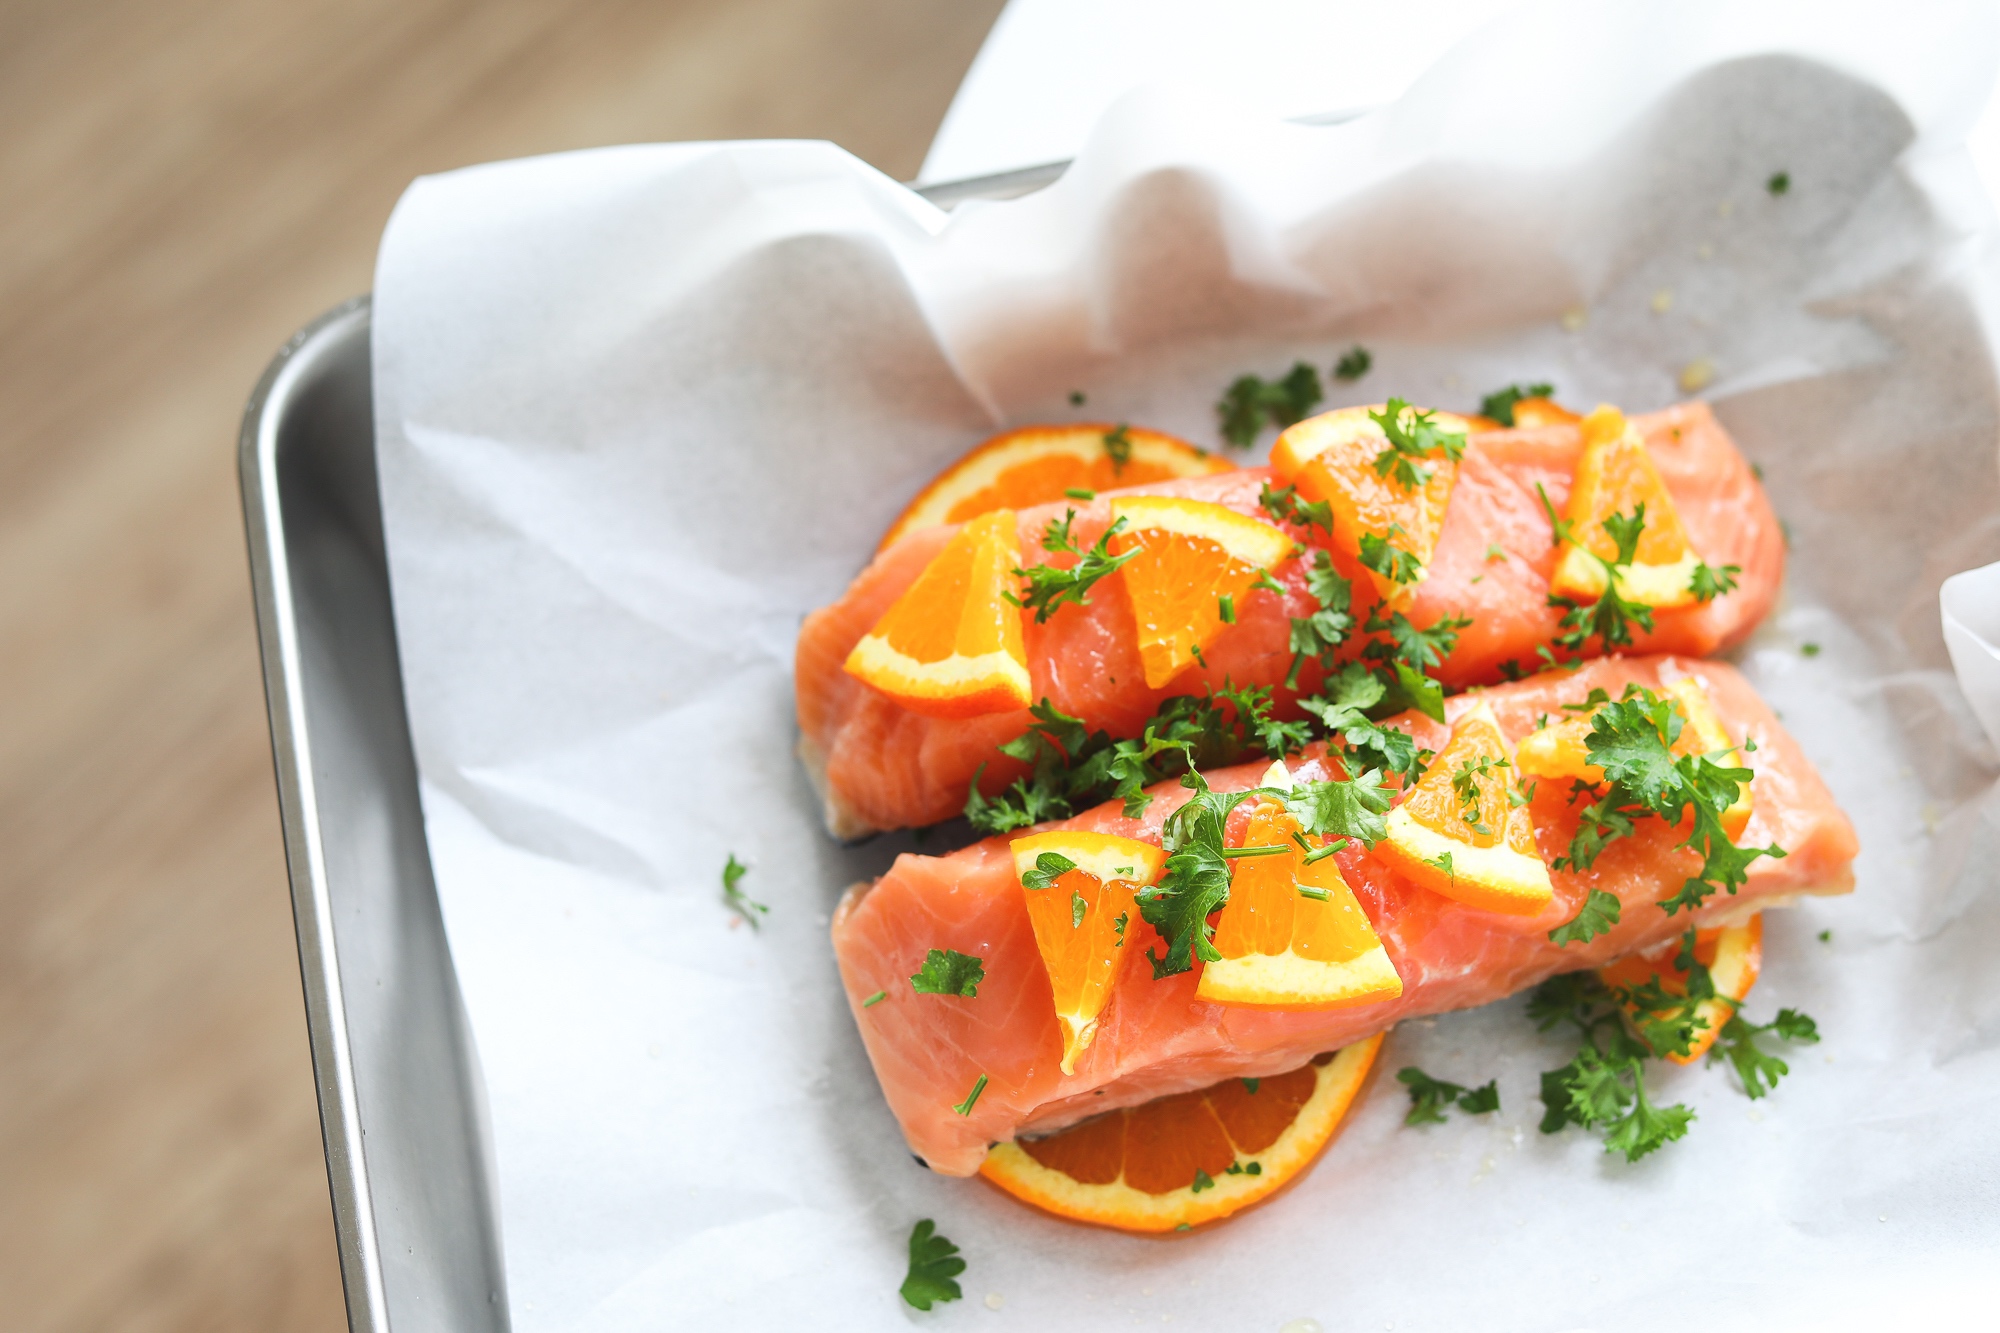 法式柑橘三文鱼佐蔬菜沙粒配塔塔酱——纸包料理/En Papillote【健康低卡】的做法